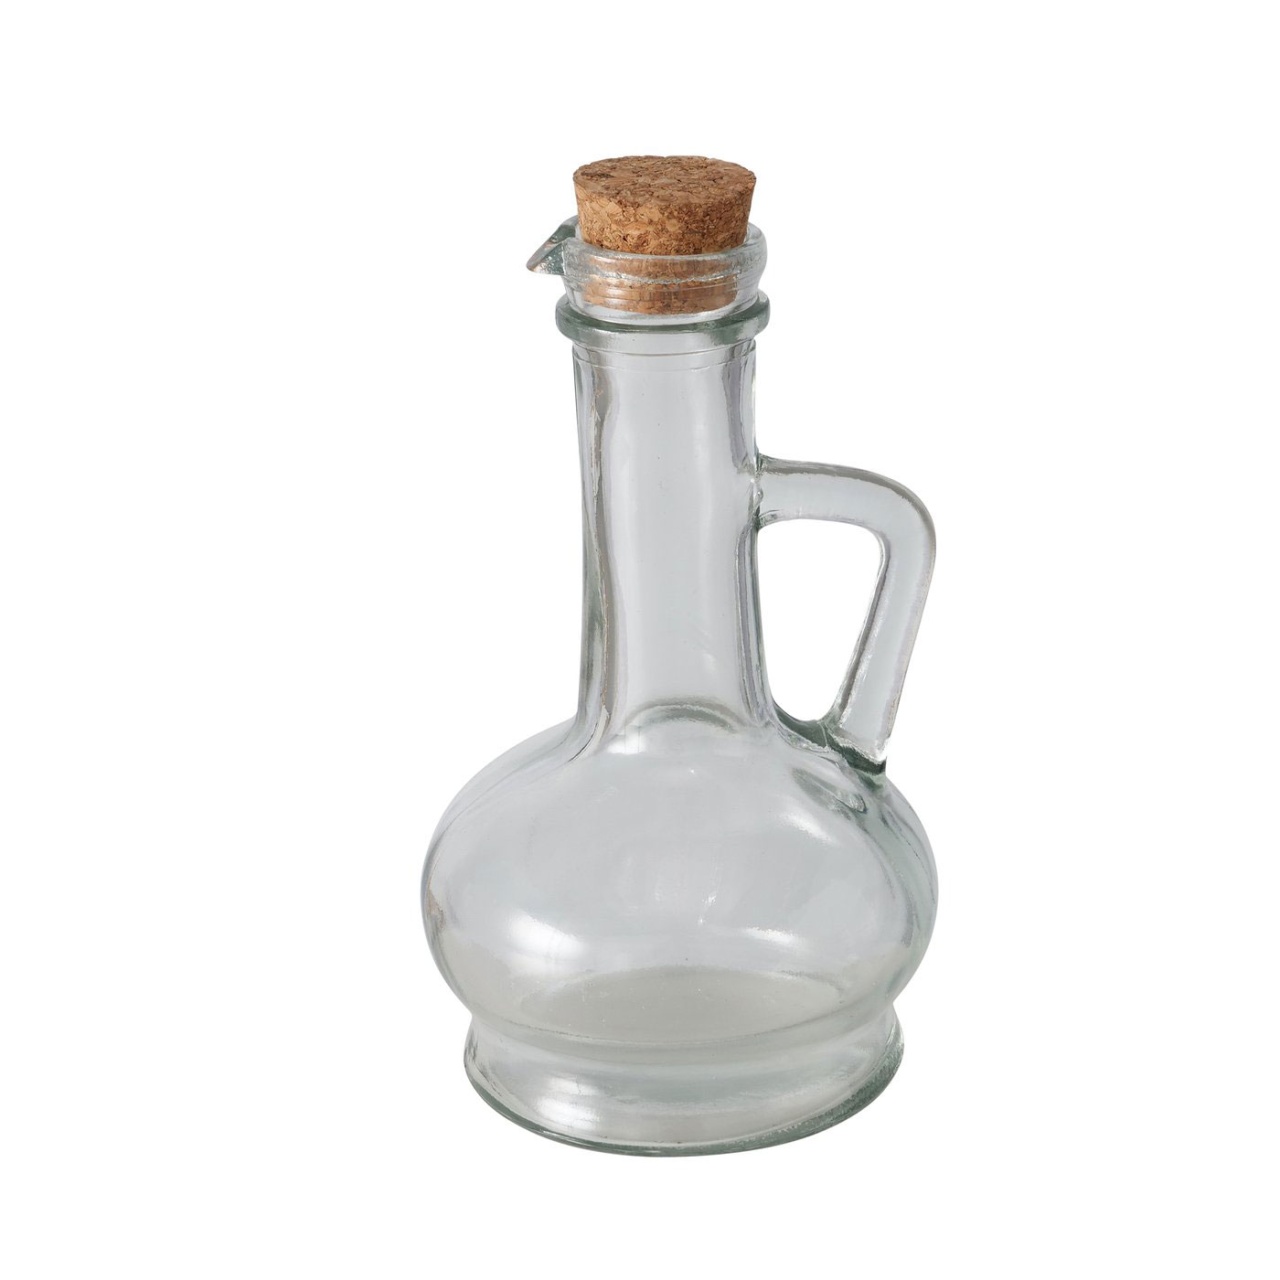 Krug Flasche Olio großer Korken klarglas H 16cm